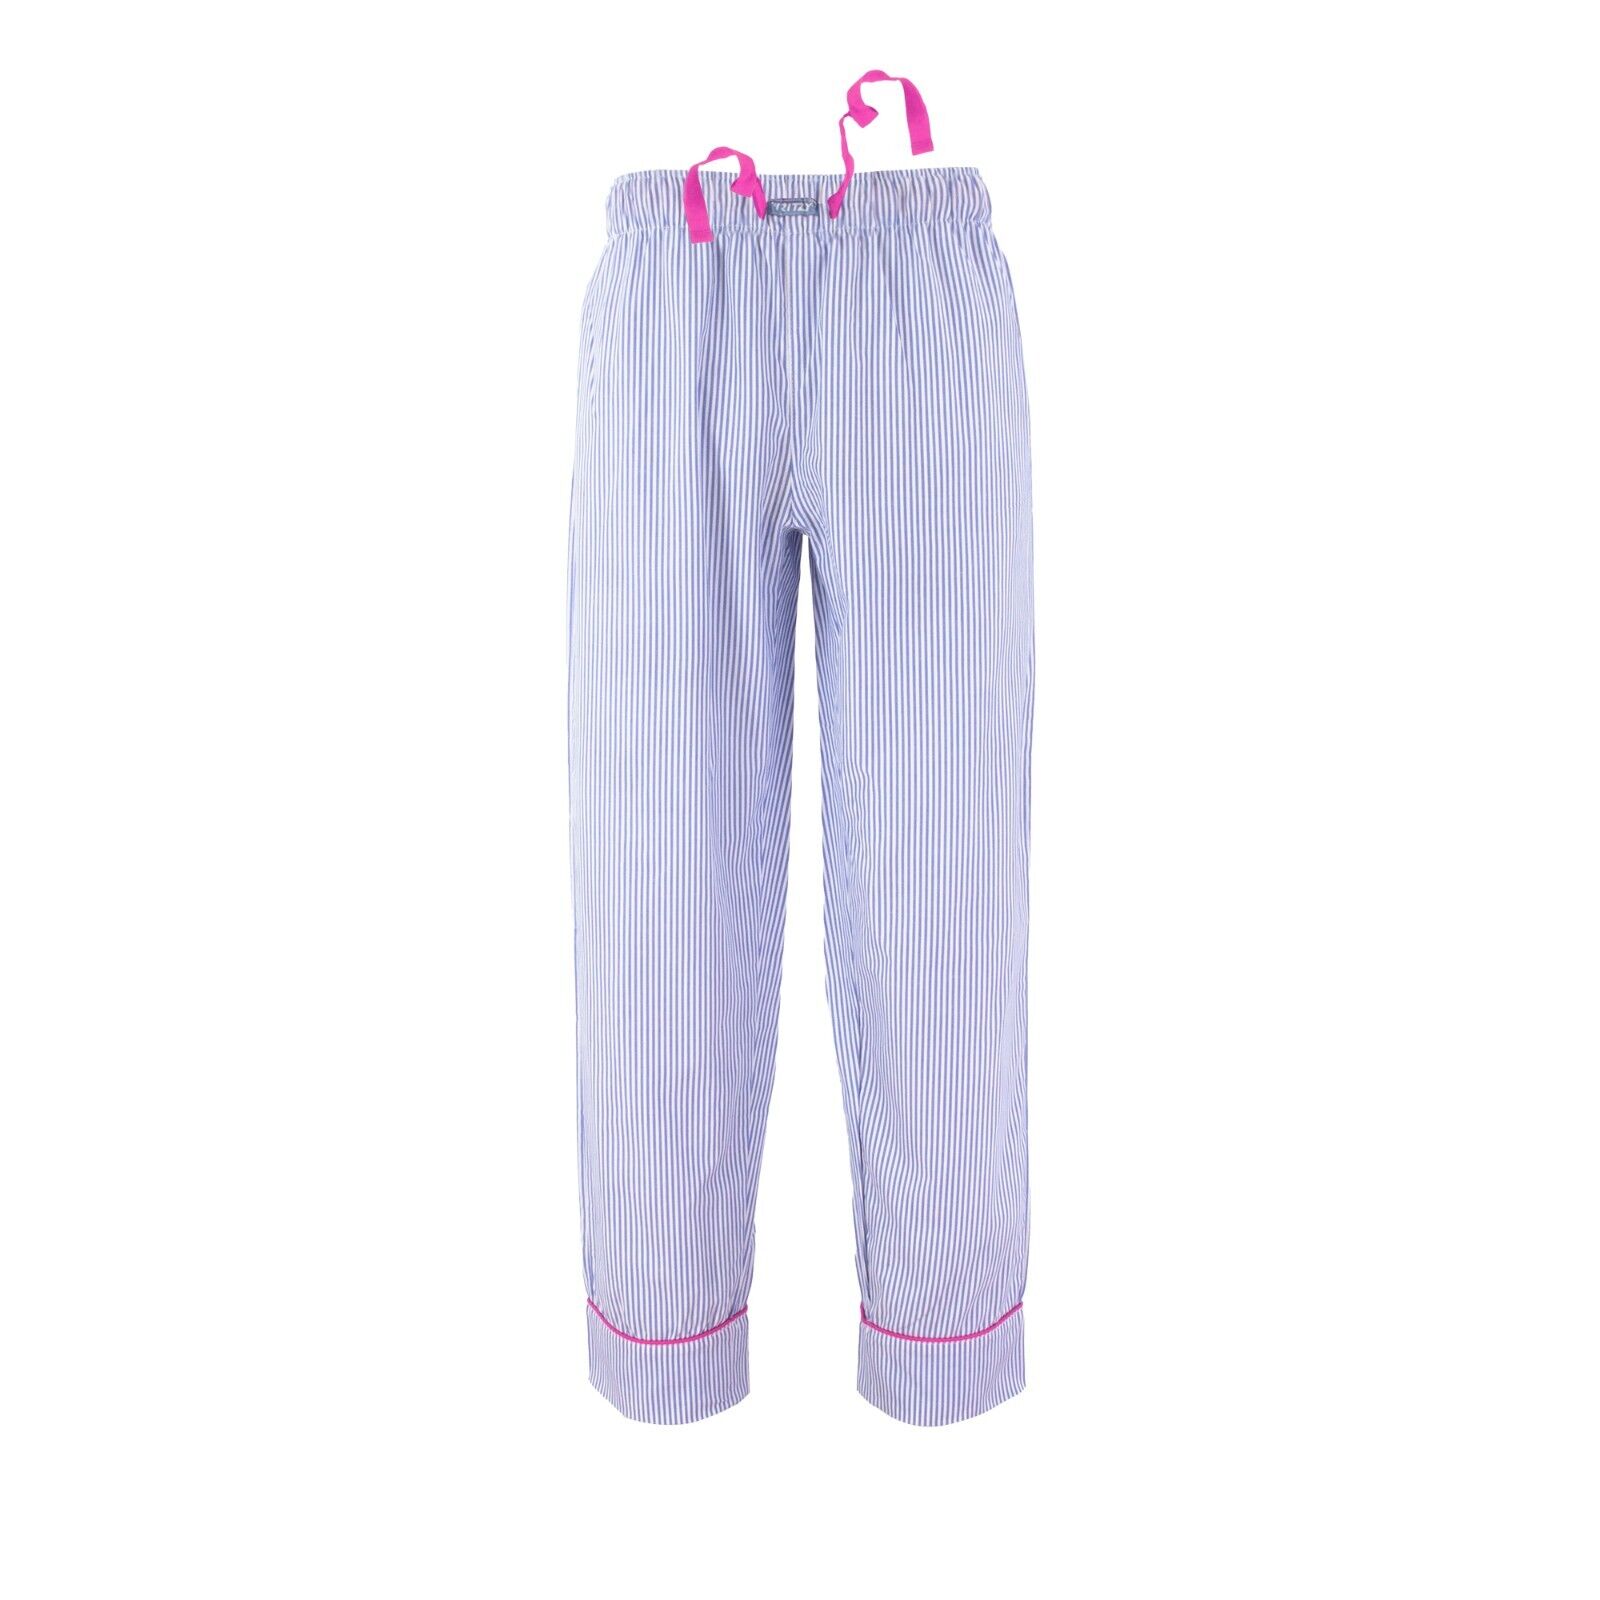 Ritzy Family (Men/Women/Girls/Boys) Pajama Pants 100% Cotton Woven - B & B Check